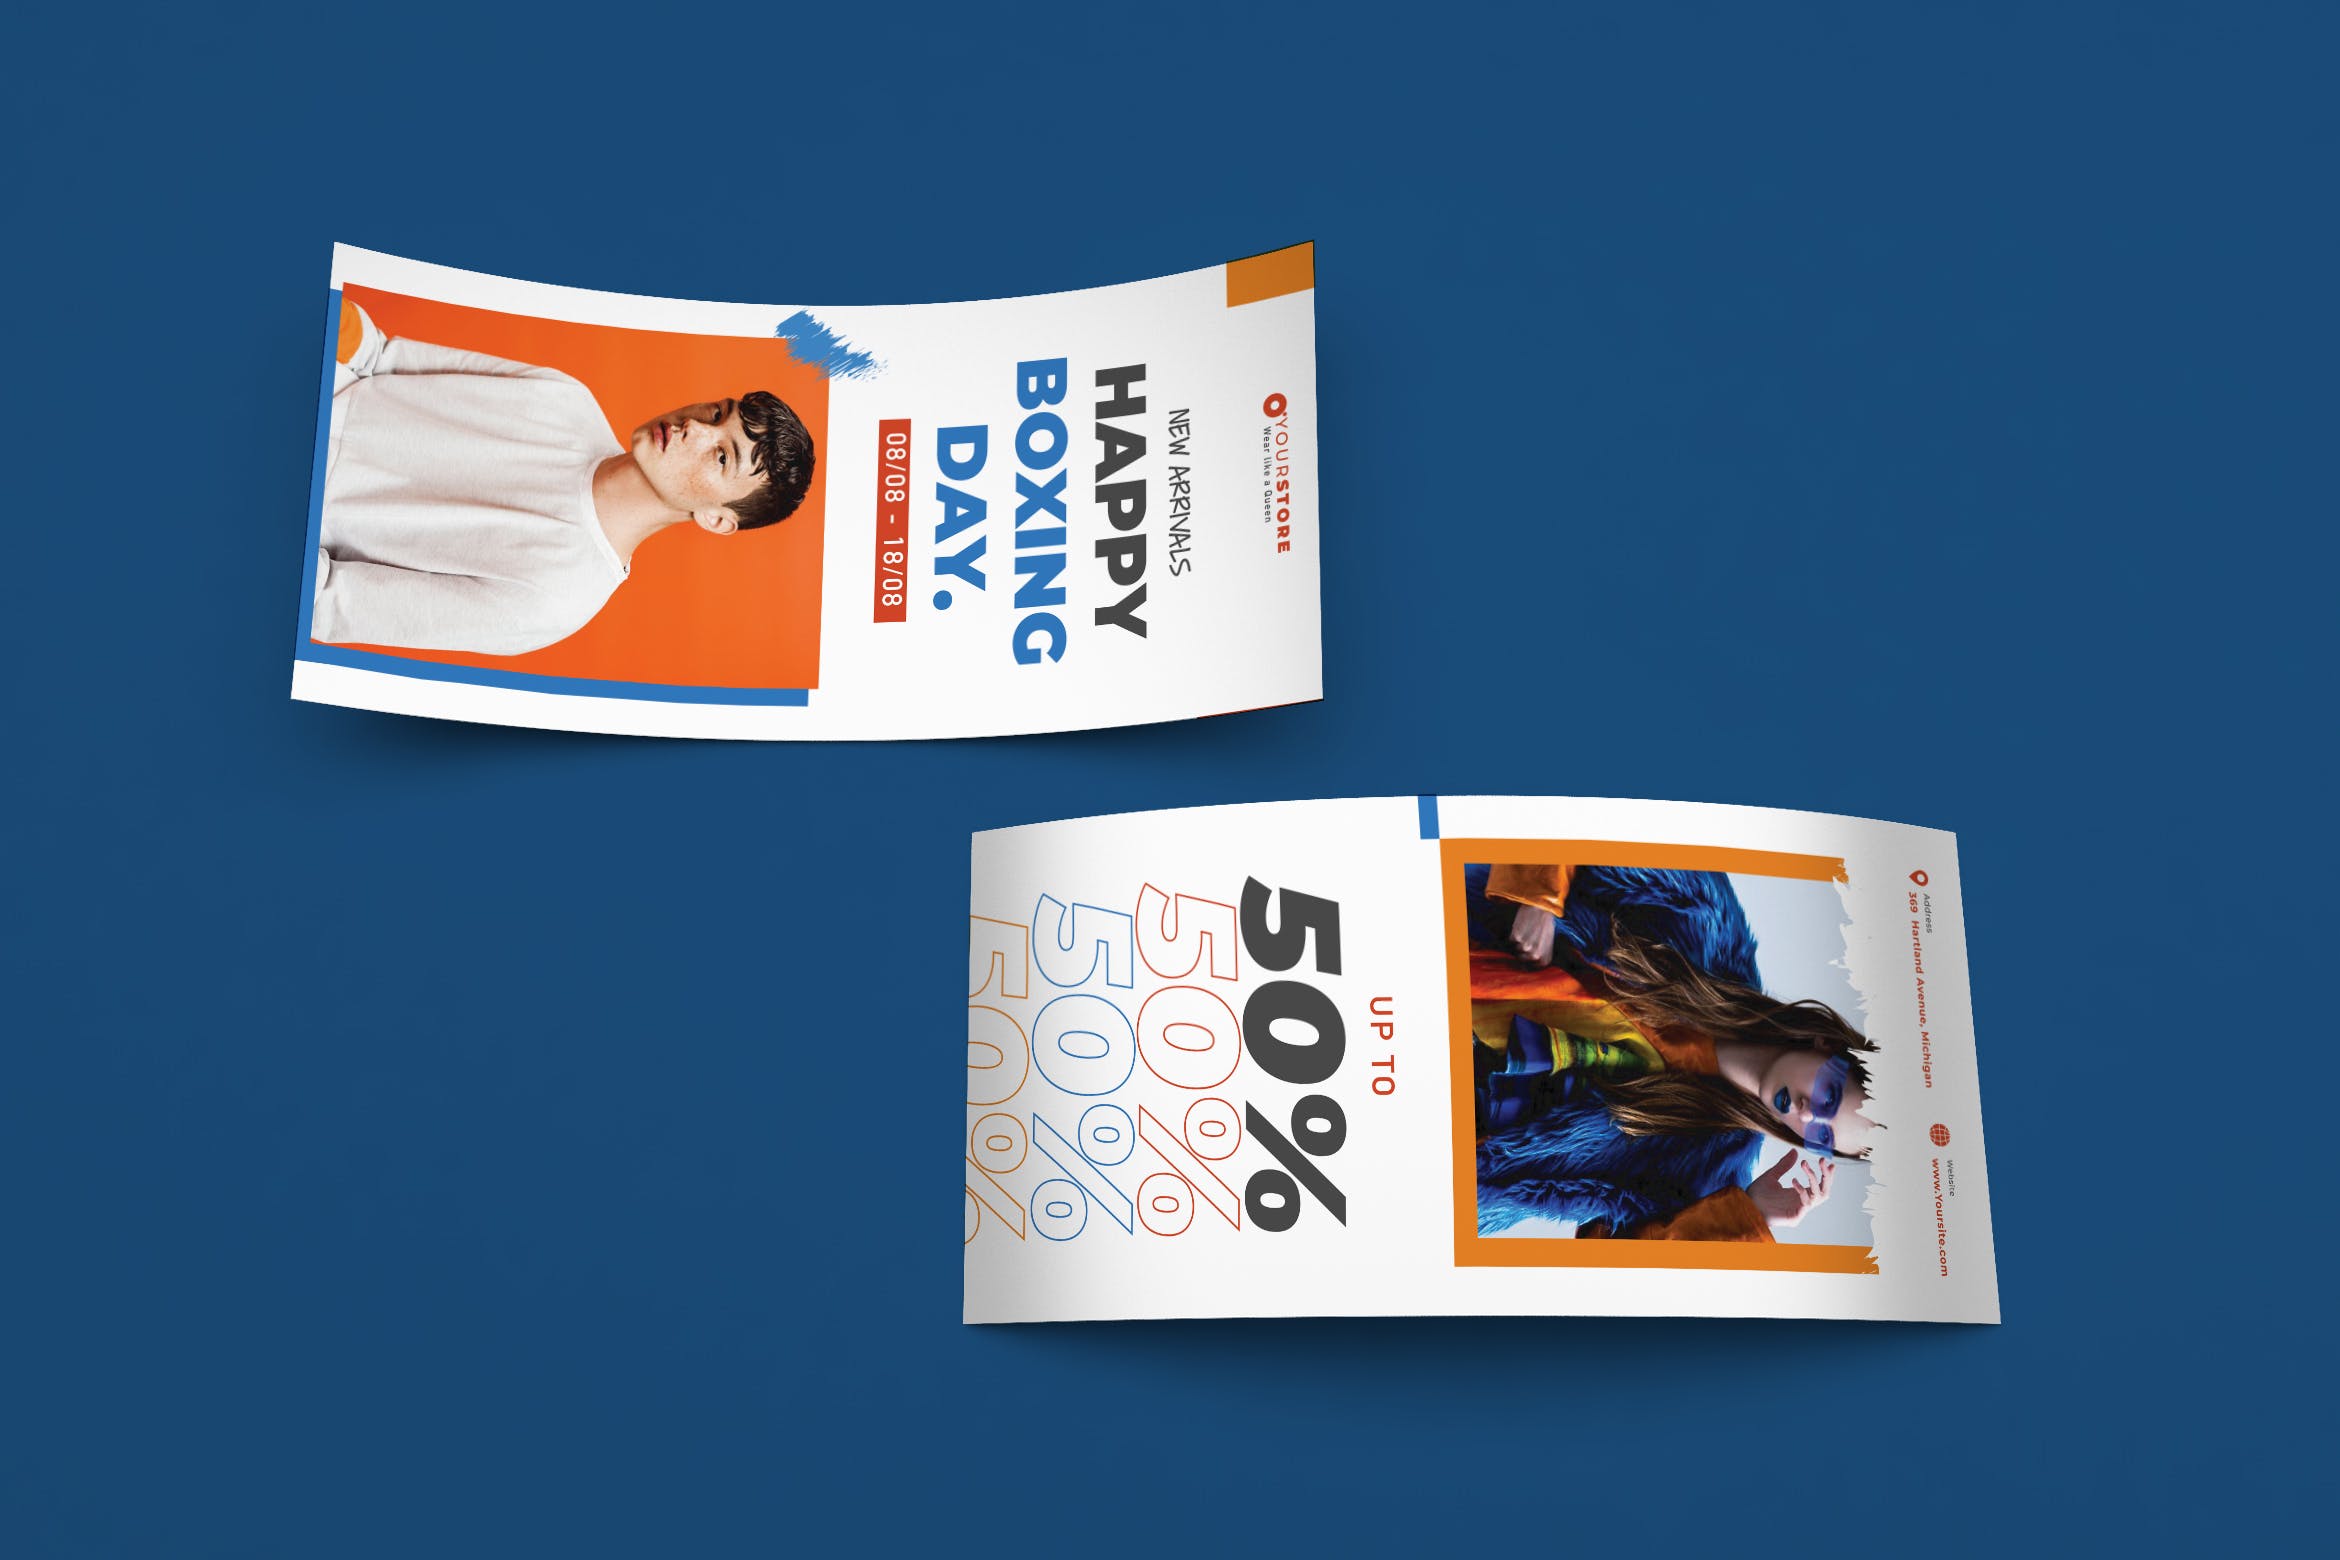 创意时尚促销活动广告宣传卡设计模板 Creative Fashion Sale DL Rackcard Template插图